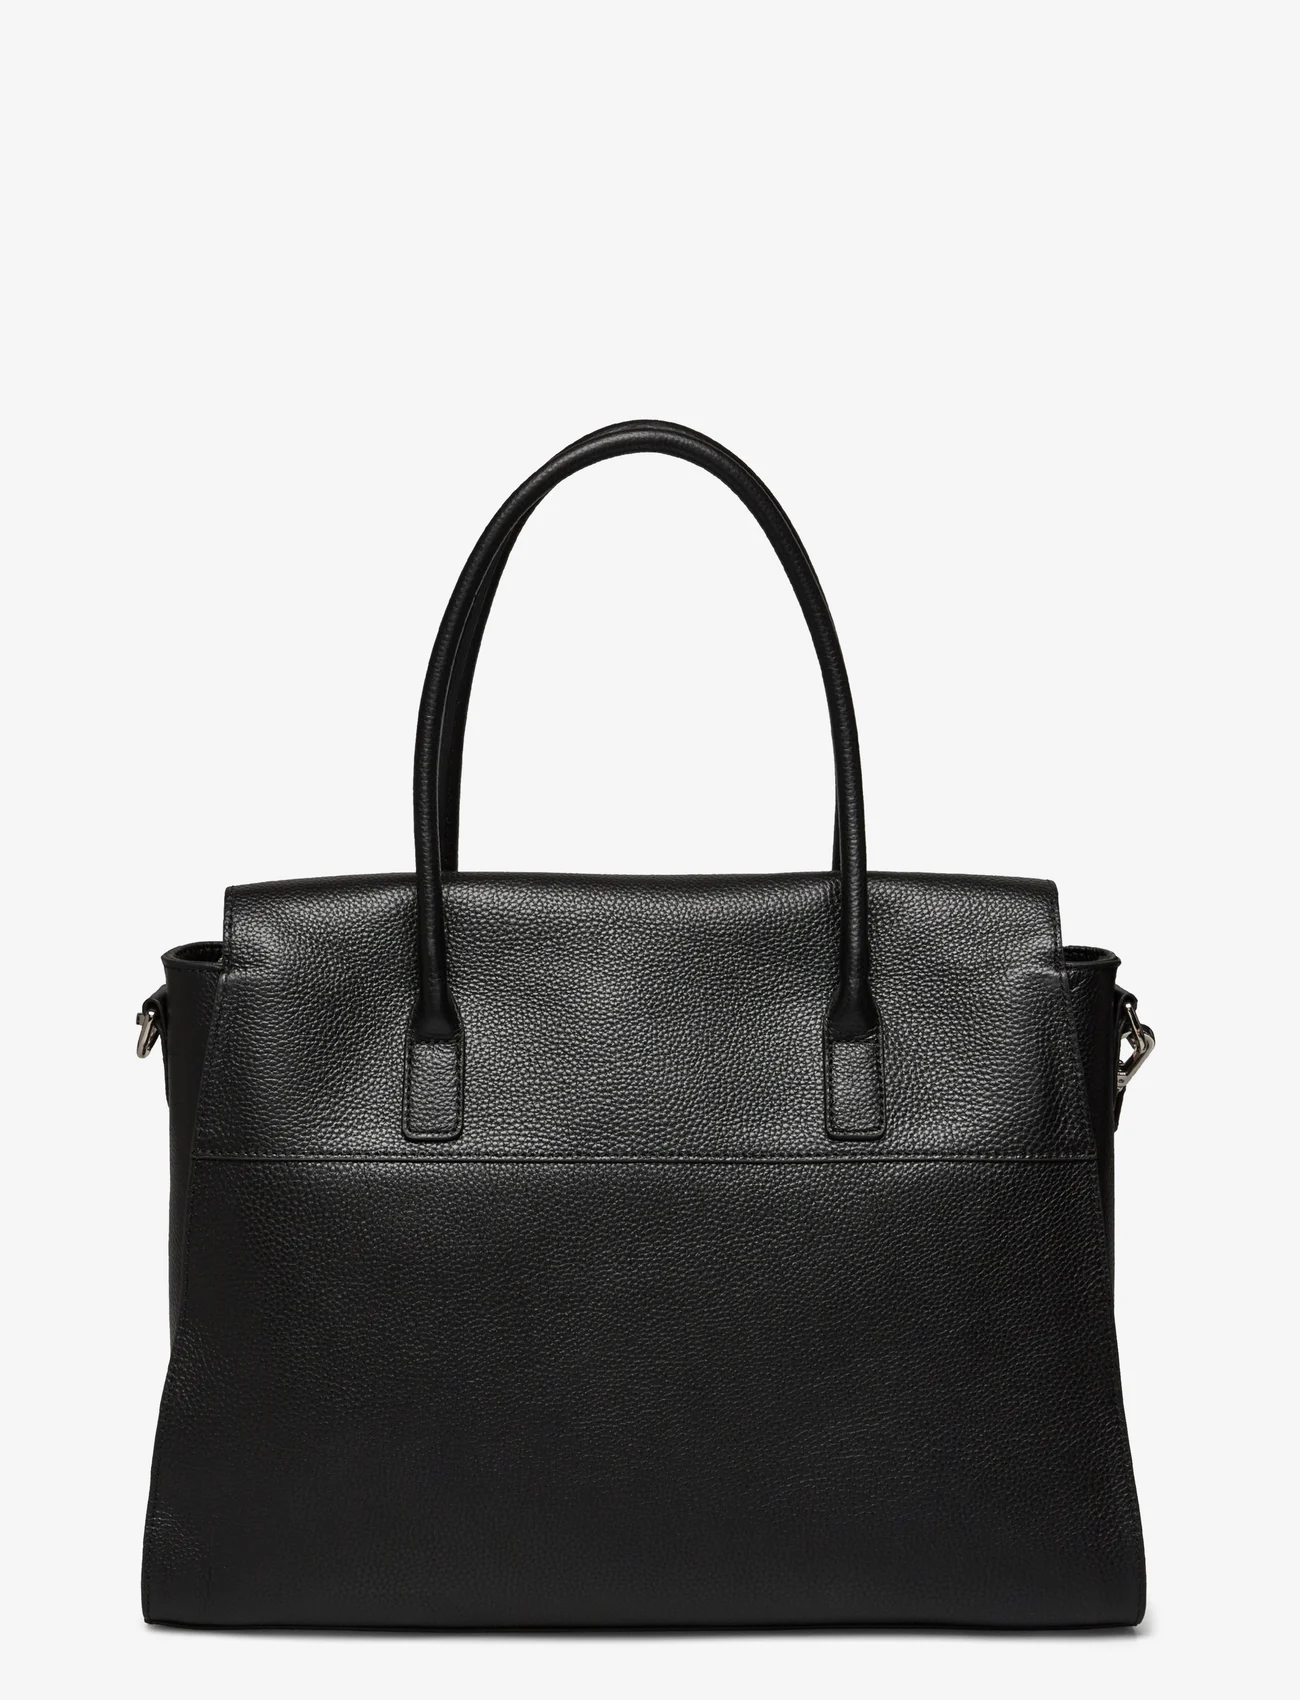 Rosemunde - Taurus working bag - odzież imprezowa w cenach outletowych - black silver - 1